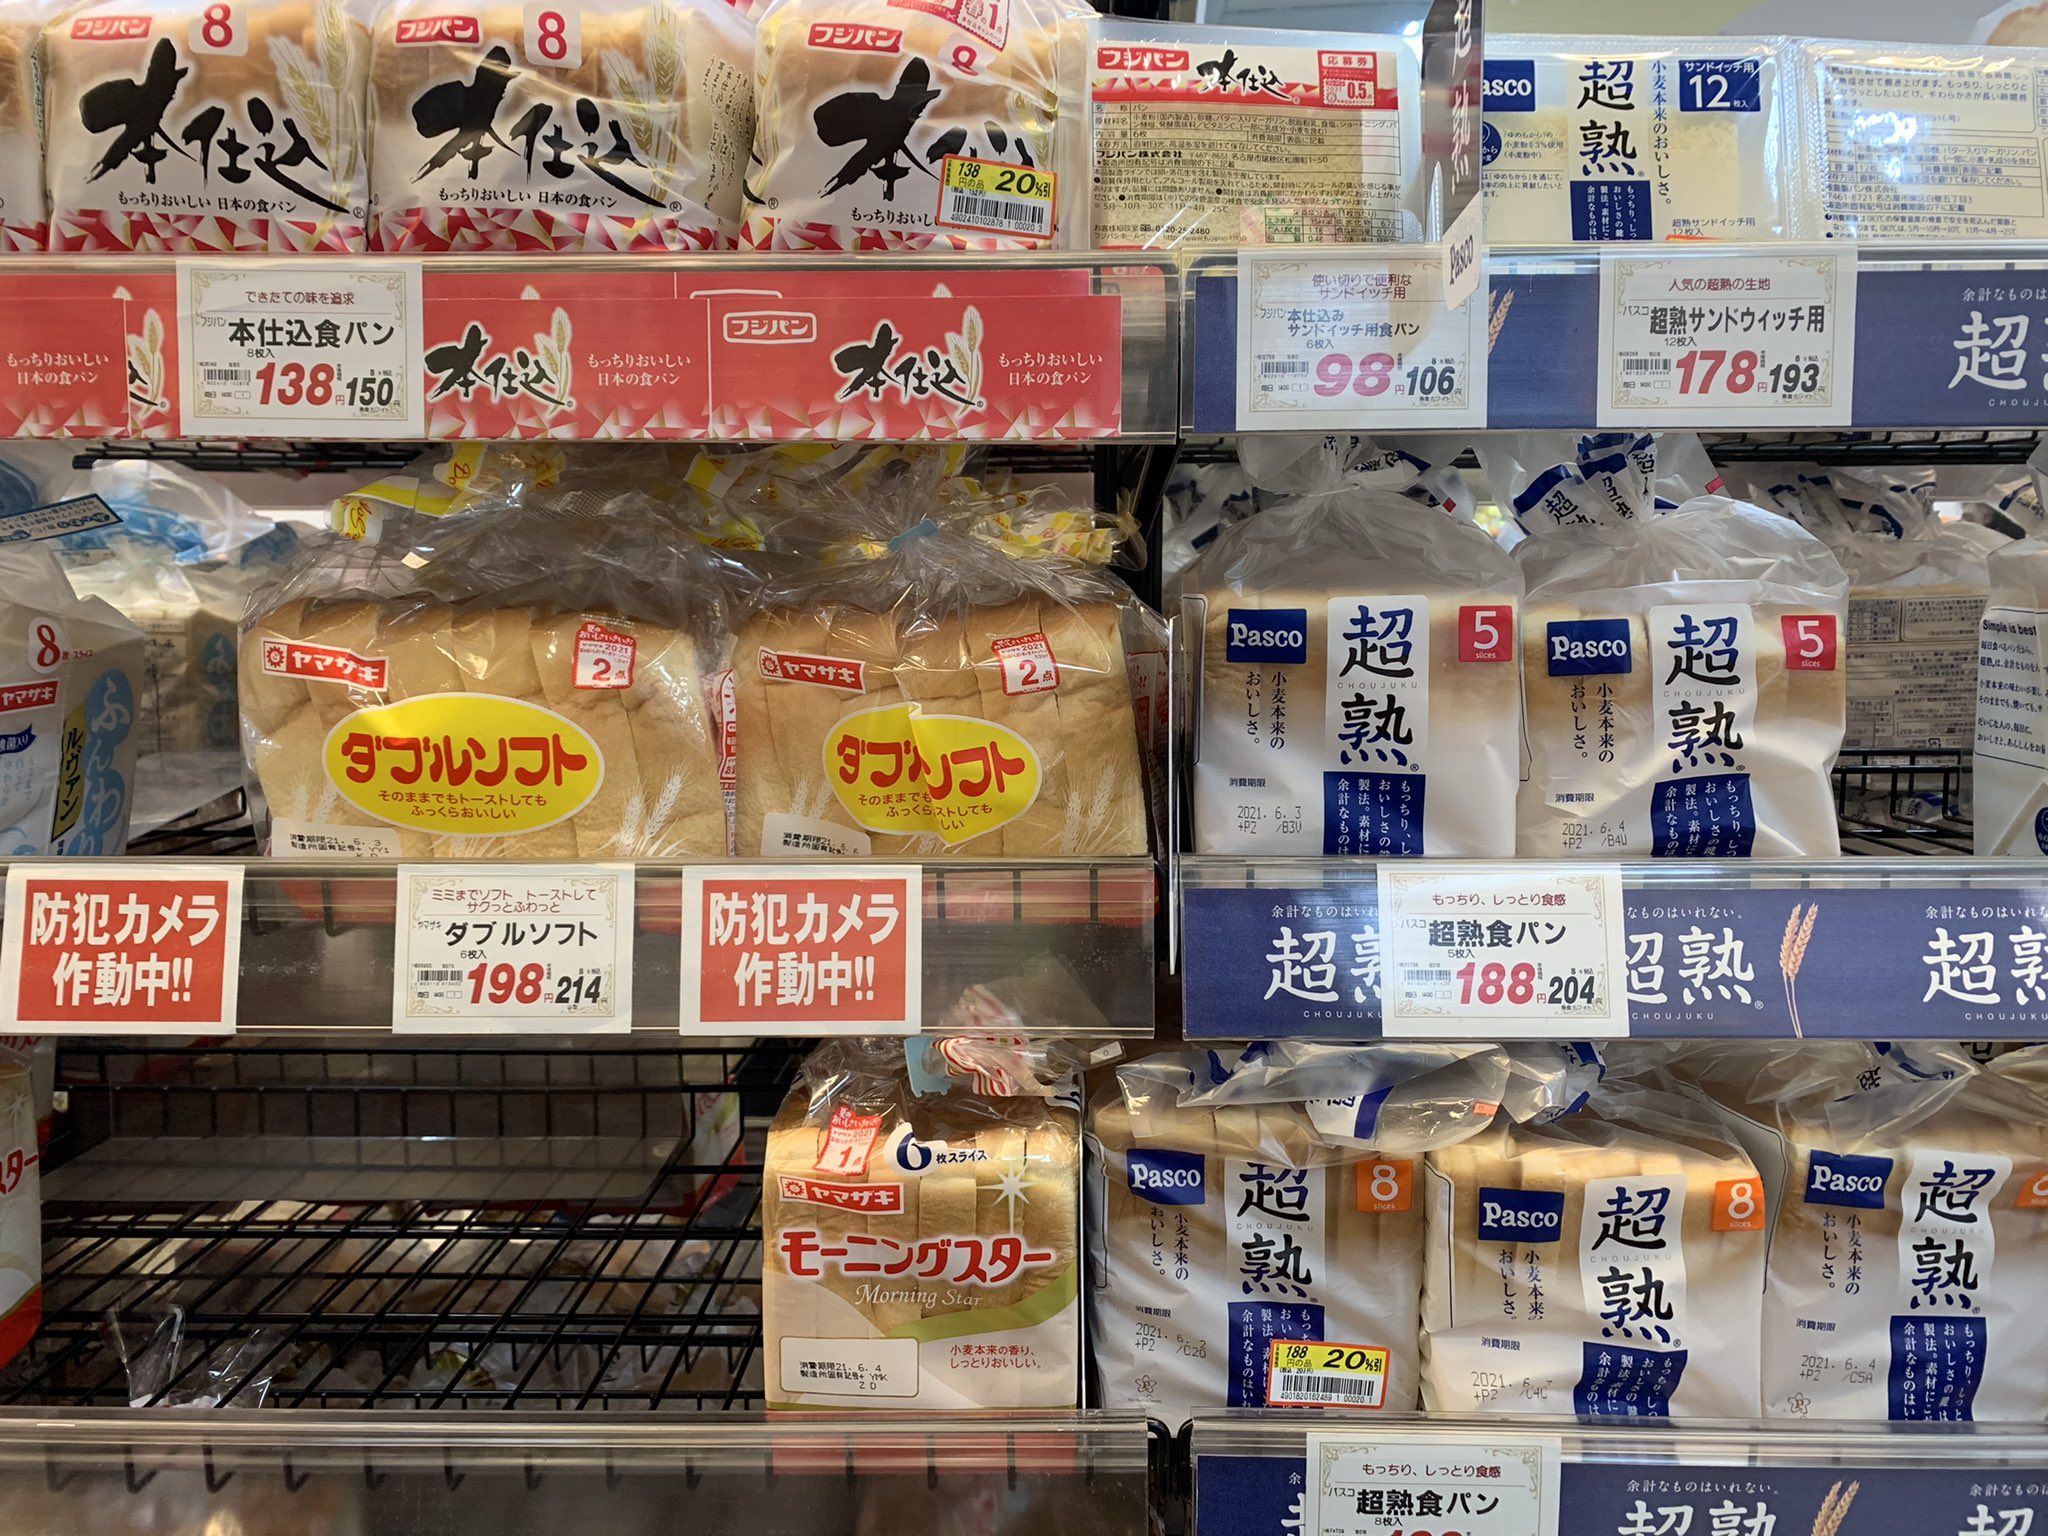 Ψωμί του τοστ με... αρουραίους - Σάλος στην Ιαπωνία με γνωστή εταιρεία